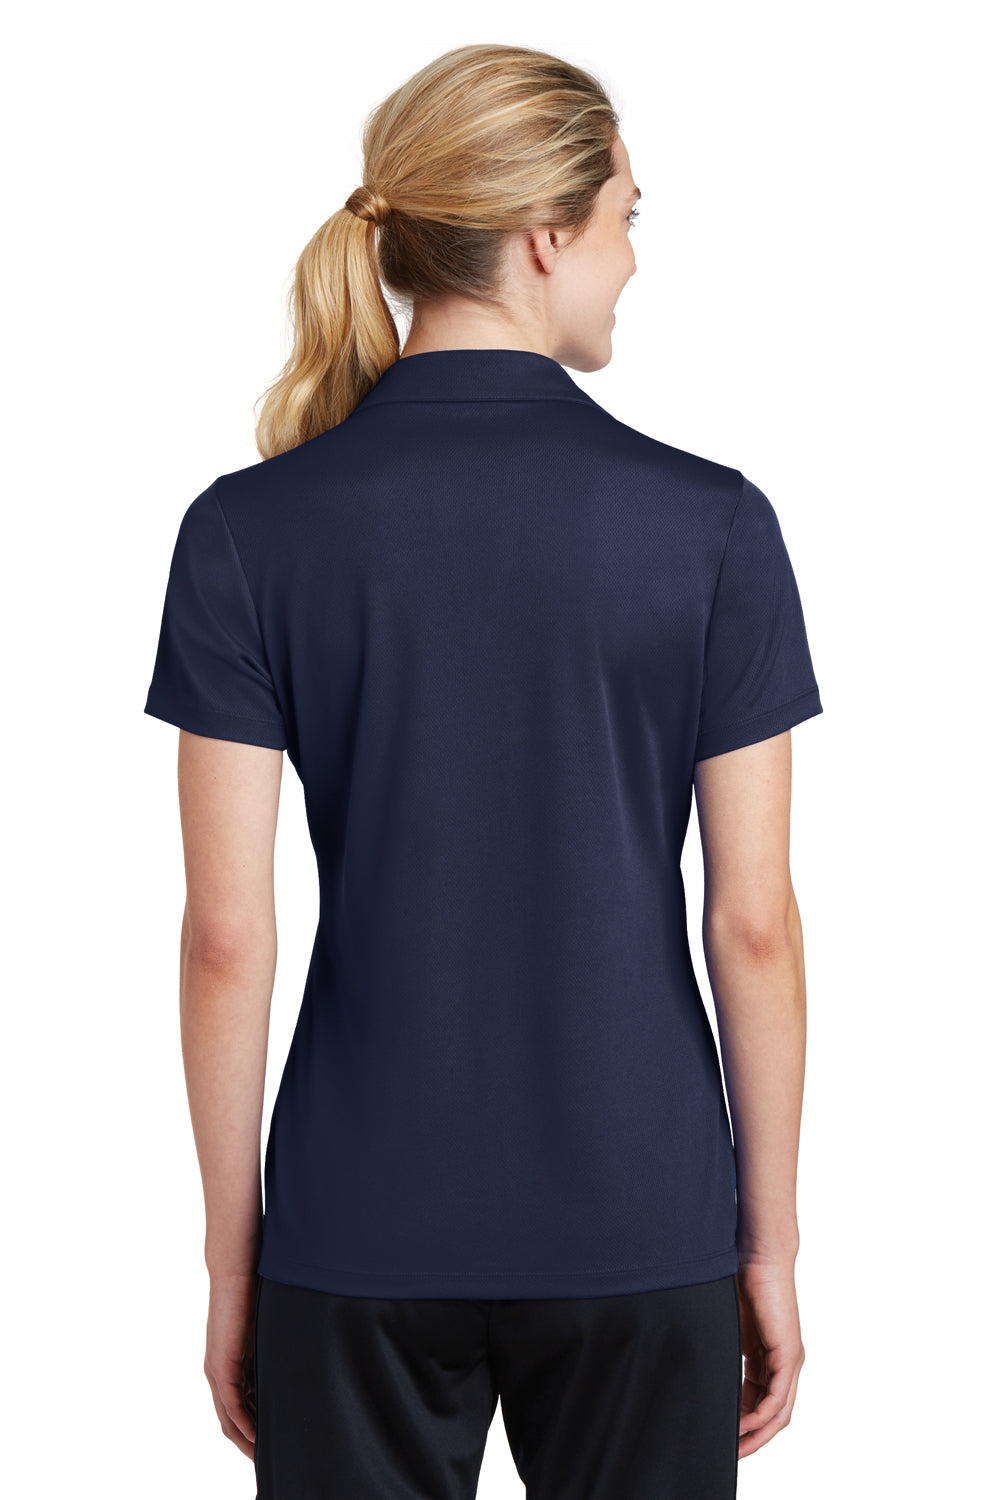 Sport-Tek LST640 Womens RacerMesh Moisture Wicking Short Sleeve Polo Shirt Navy Blue Back